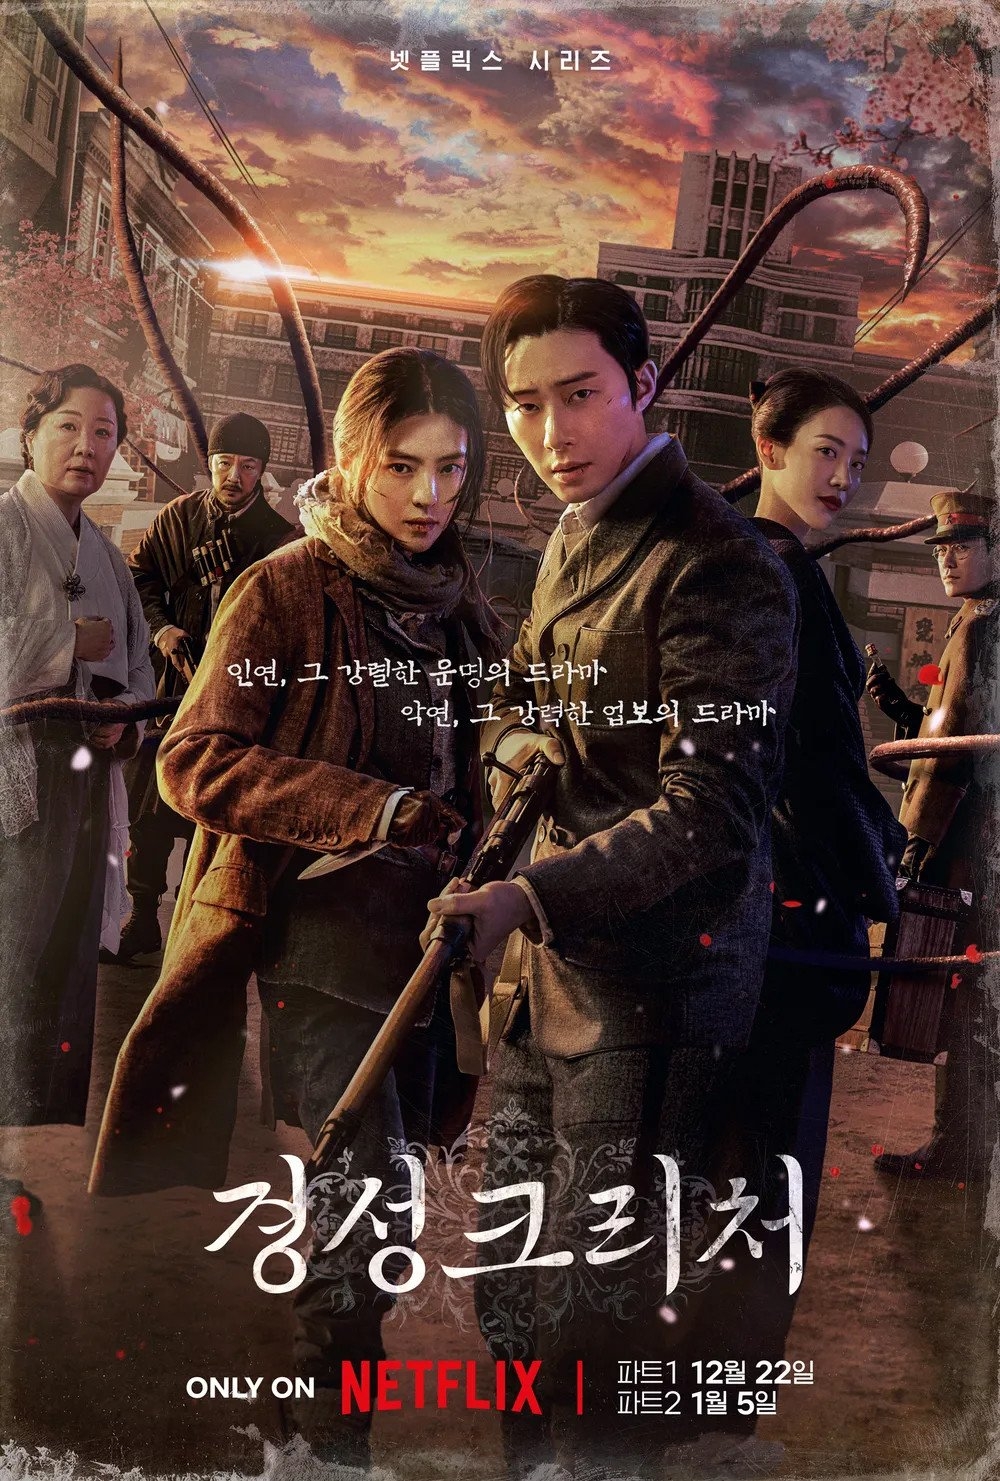 Mặc chỉ trích, 'Gyeongseong Creature' vẫn vươn cao trên bảng xếp hạng Netflix